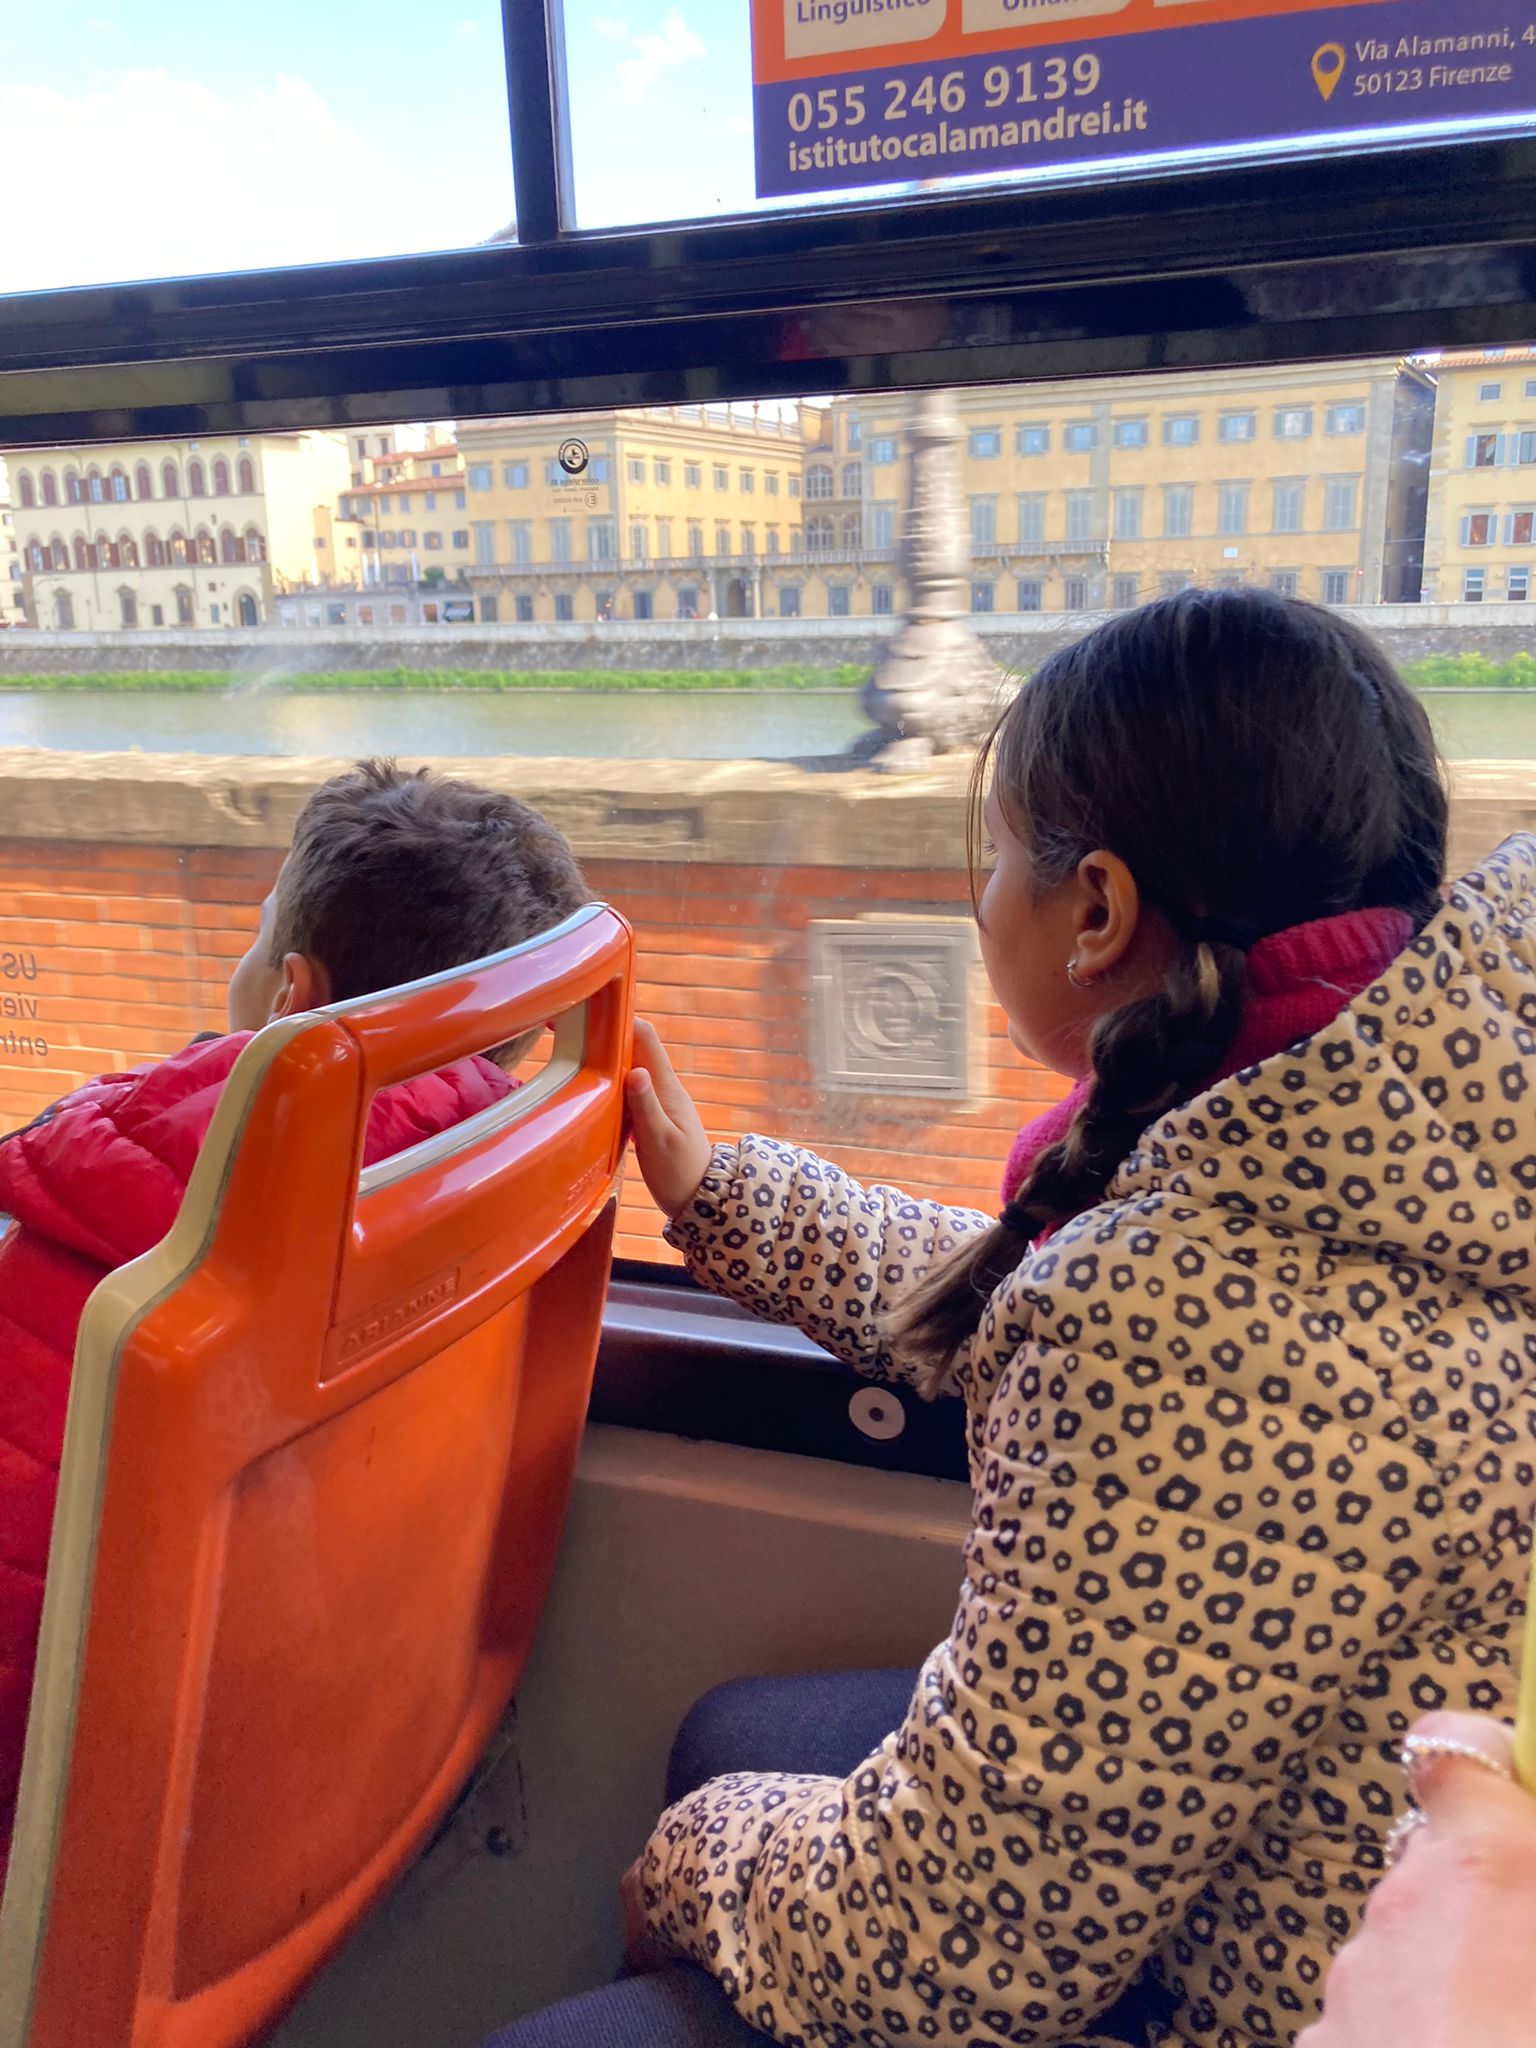 Studenti scoprono le loro città col bus (Fonte foto Autolinee Toscane)